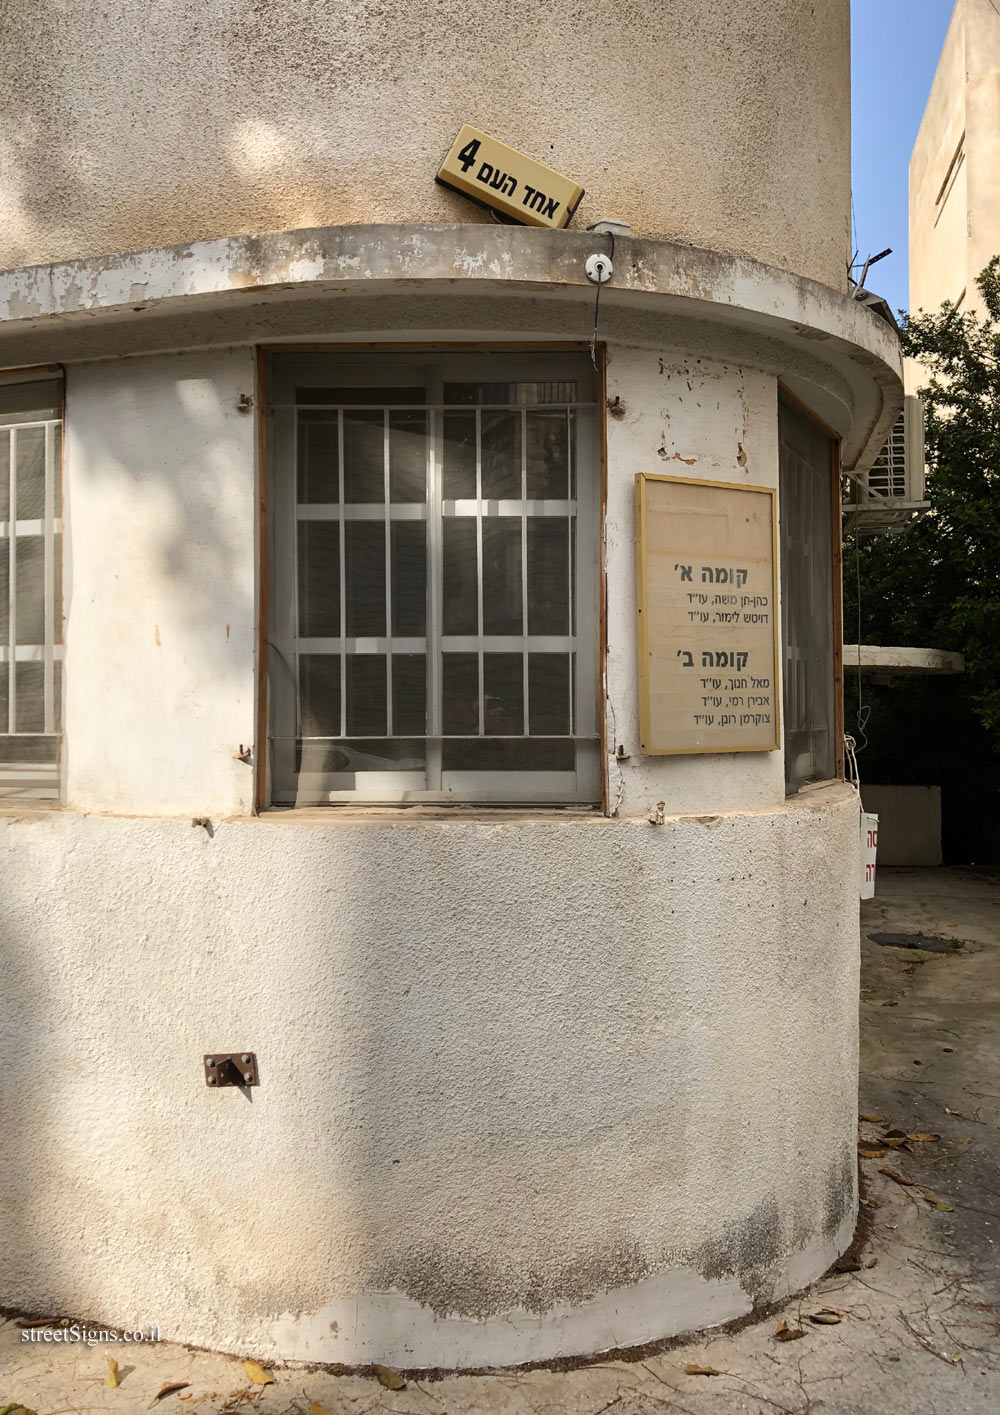 Haifa - buildings for conservation - Moshe Weissman House - 4 Ahad Ha’am